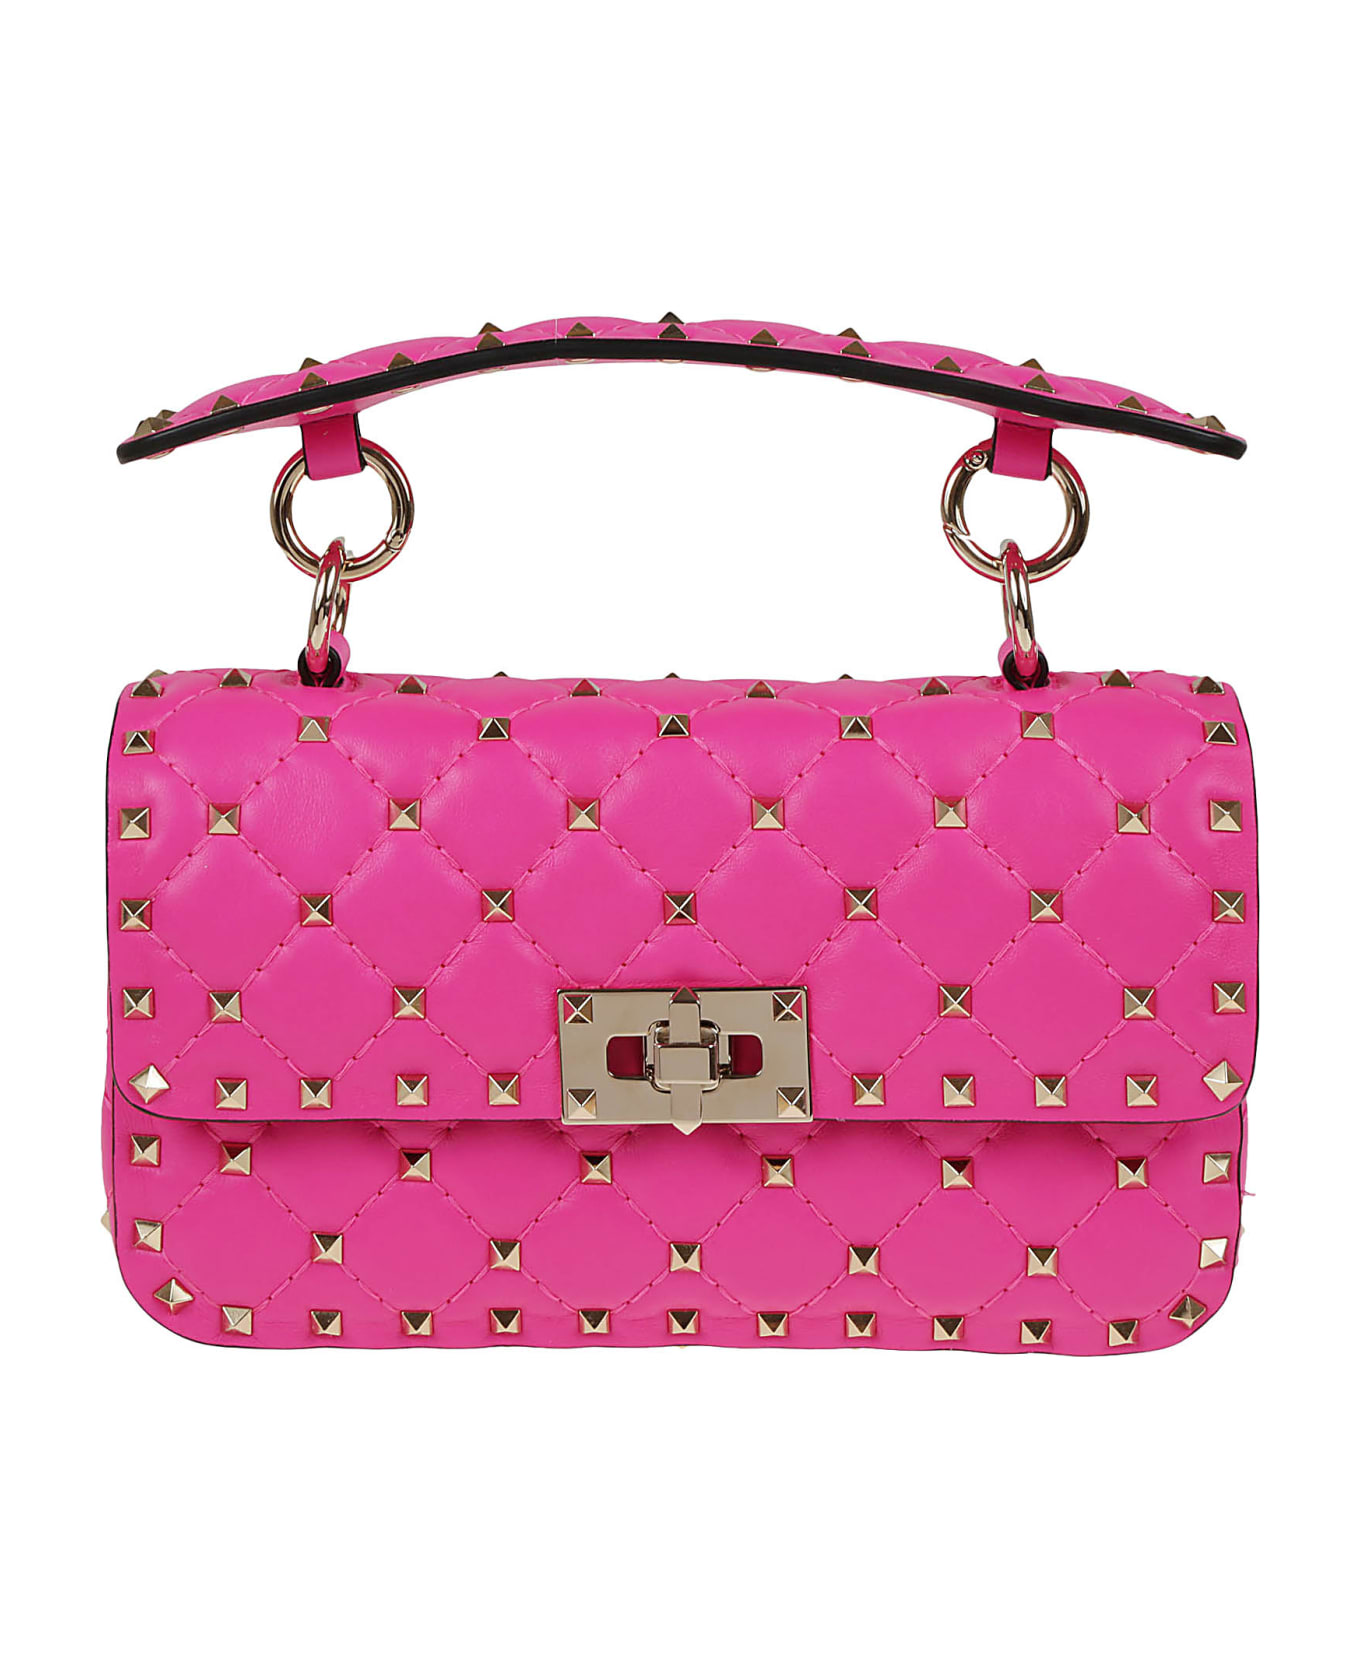 Valentino Garavani Small Shoulder Bag Rockstud Spike - Uwt Pink Pp トートバッグ